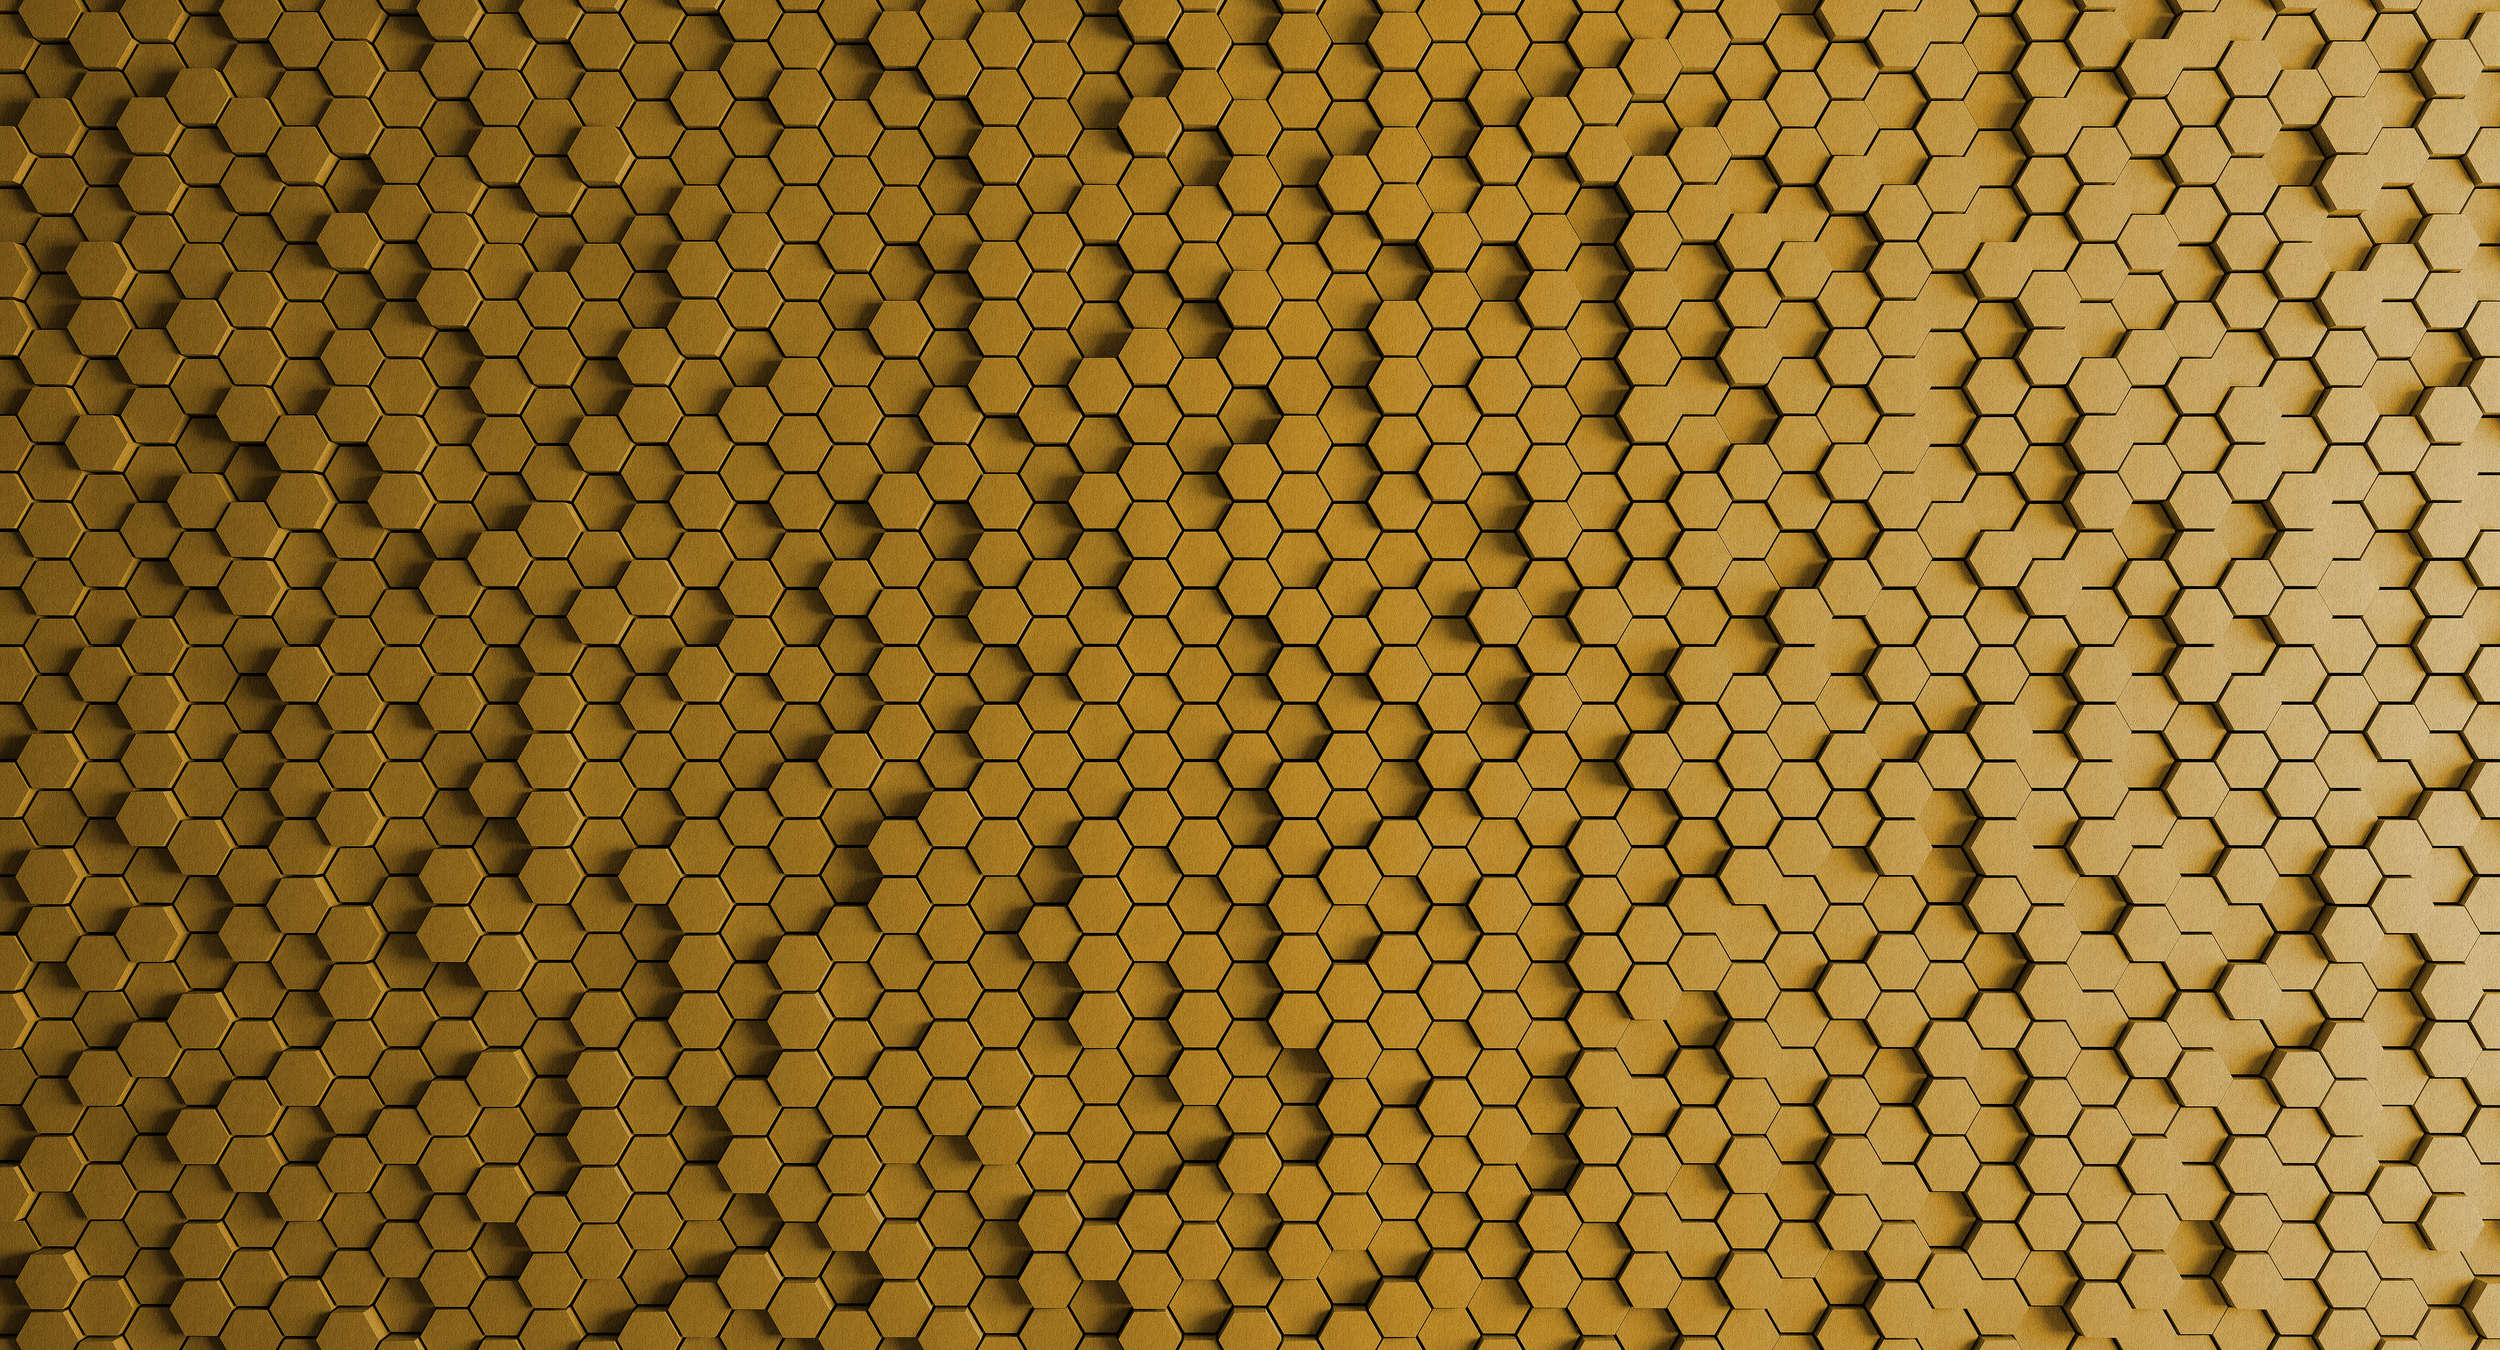             Honeycomb 1 - 3D Fototapete mit gelbem Wabendesign in Filz Struktur – Gelb, Schwarz | Mattes Glattvlies
        